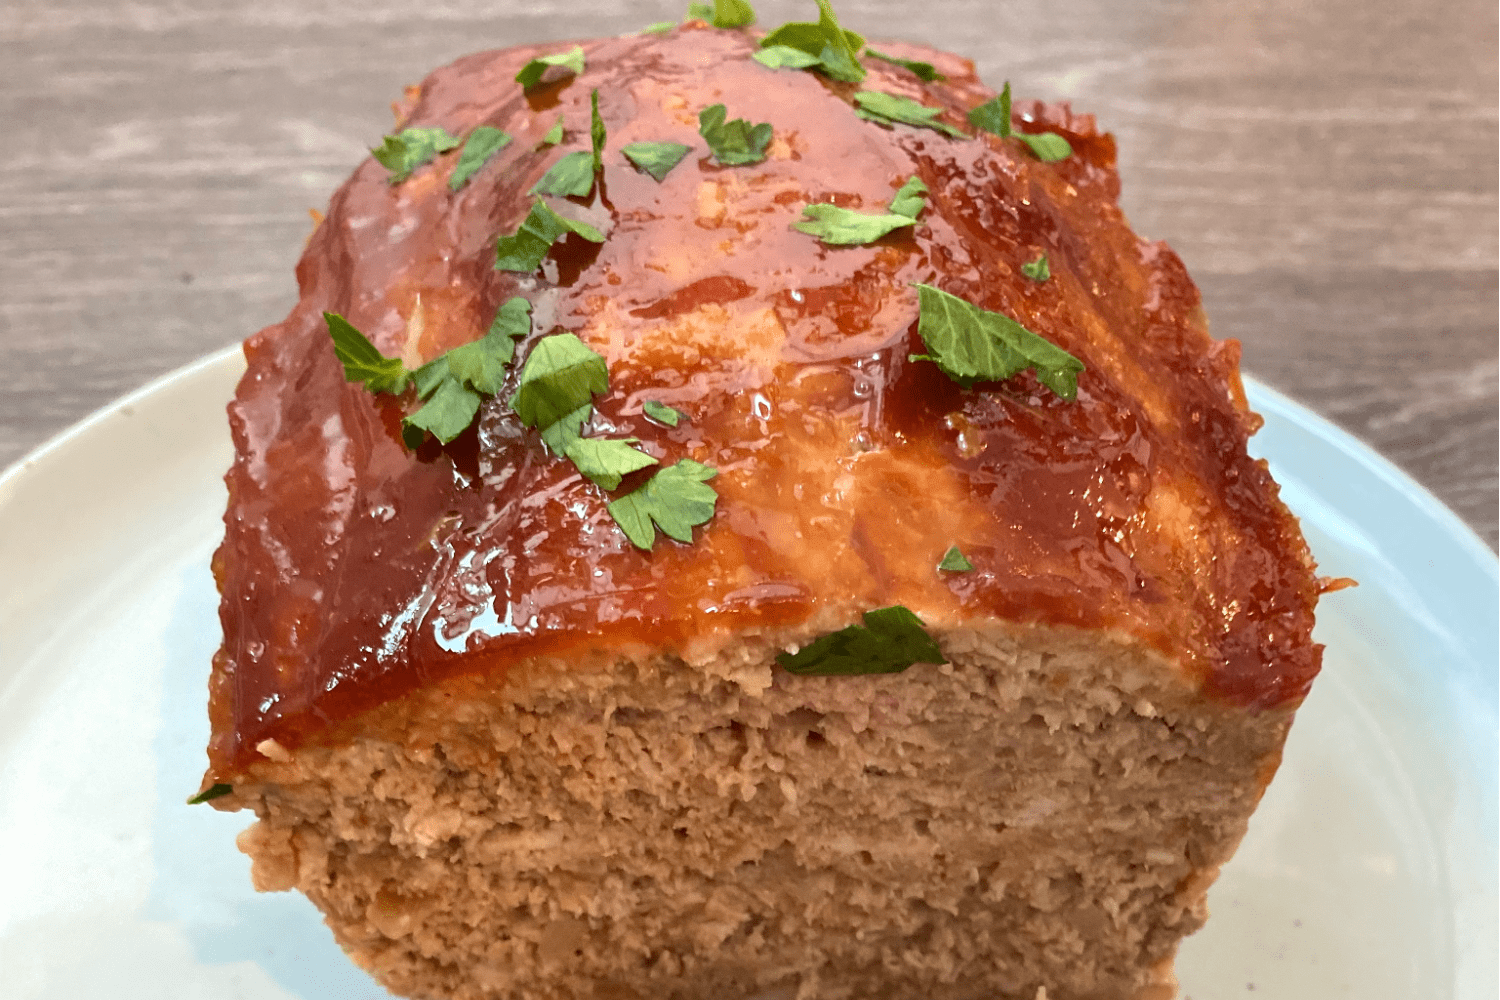 Đây là bí quyết để món bánh mì thịt có hương vị thơm ngon nhất